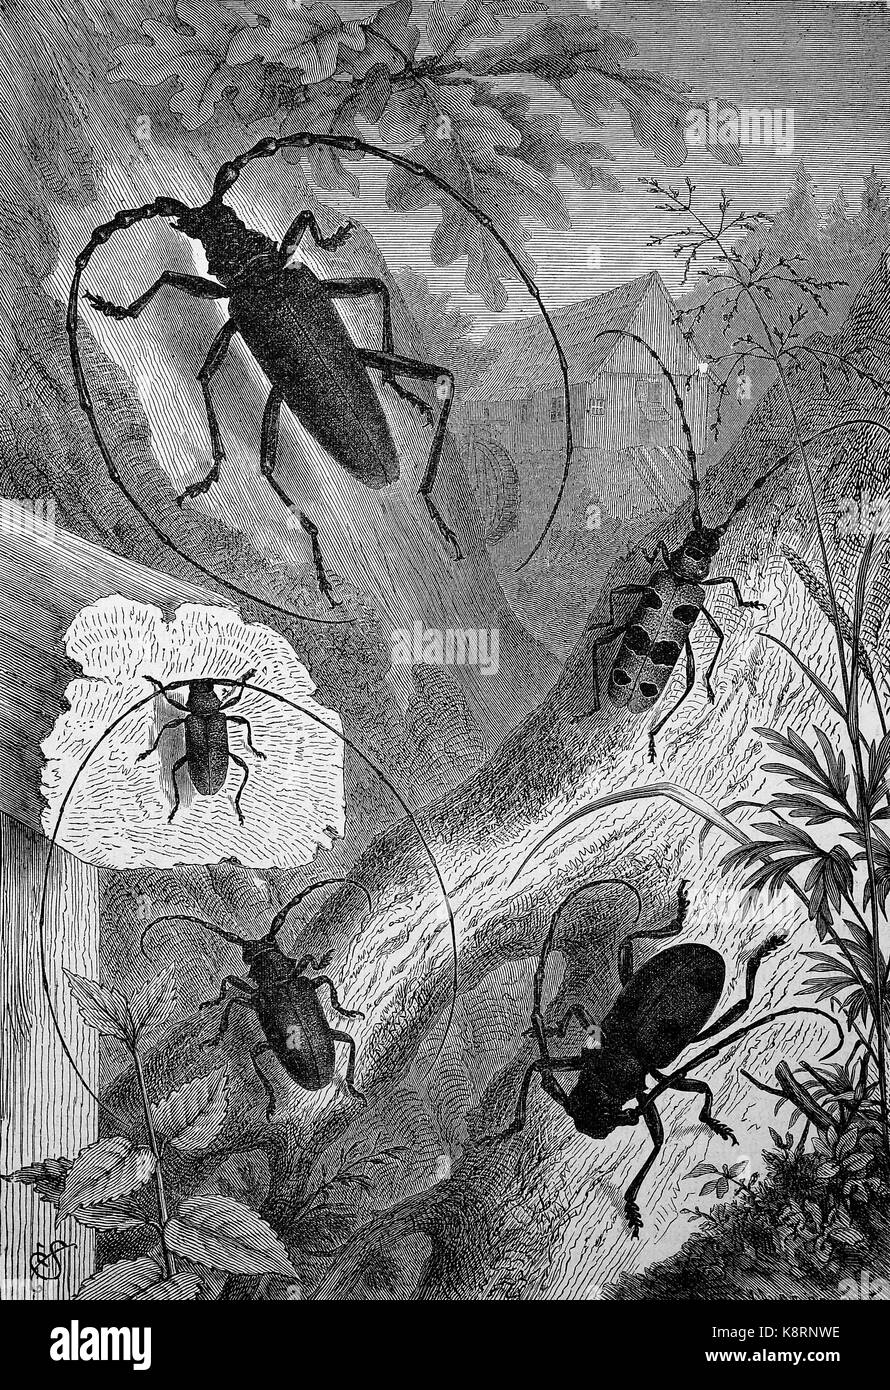 Longhorn Käfer, Cerambycidae; auch bekannt als Langhörnigen oder Longhorn Käfer oder longicorns, eine kosmopolitische Familie von Käfern, digital verbesserte Reproduktion eines Holzschnitt, im 19. Jahrhundert veröffentlicht. Stockfoto